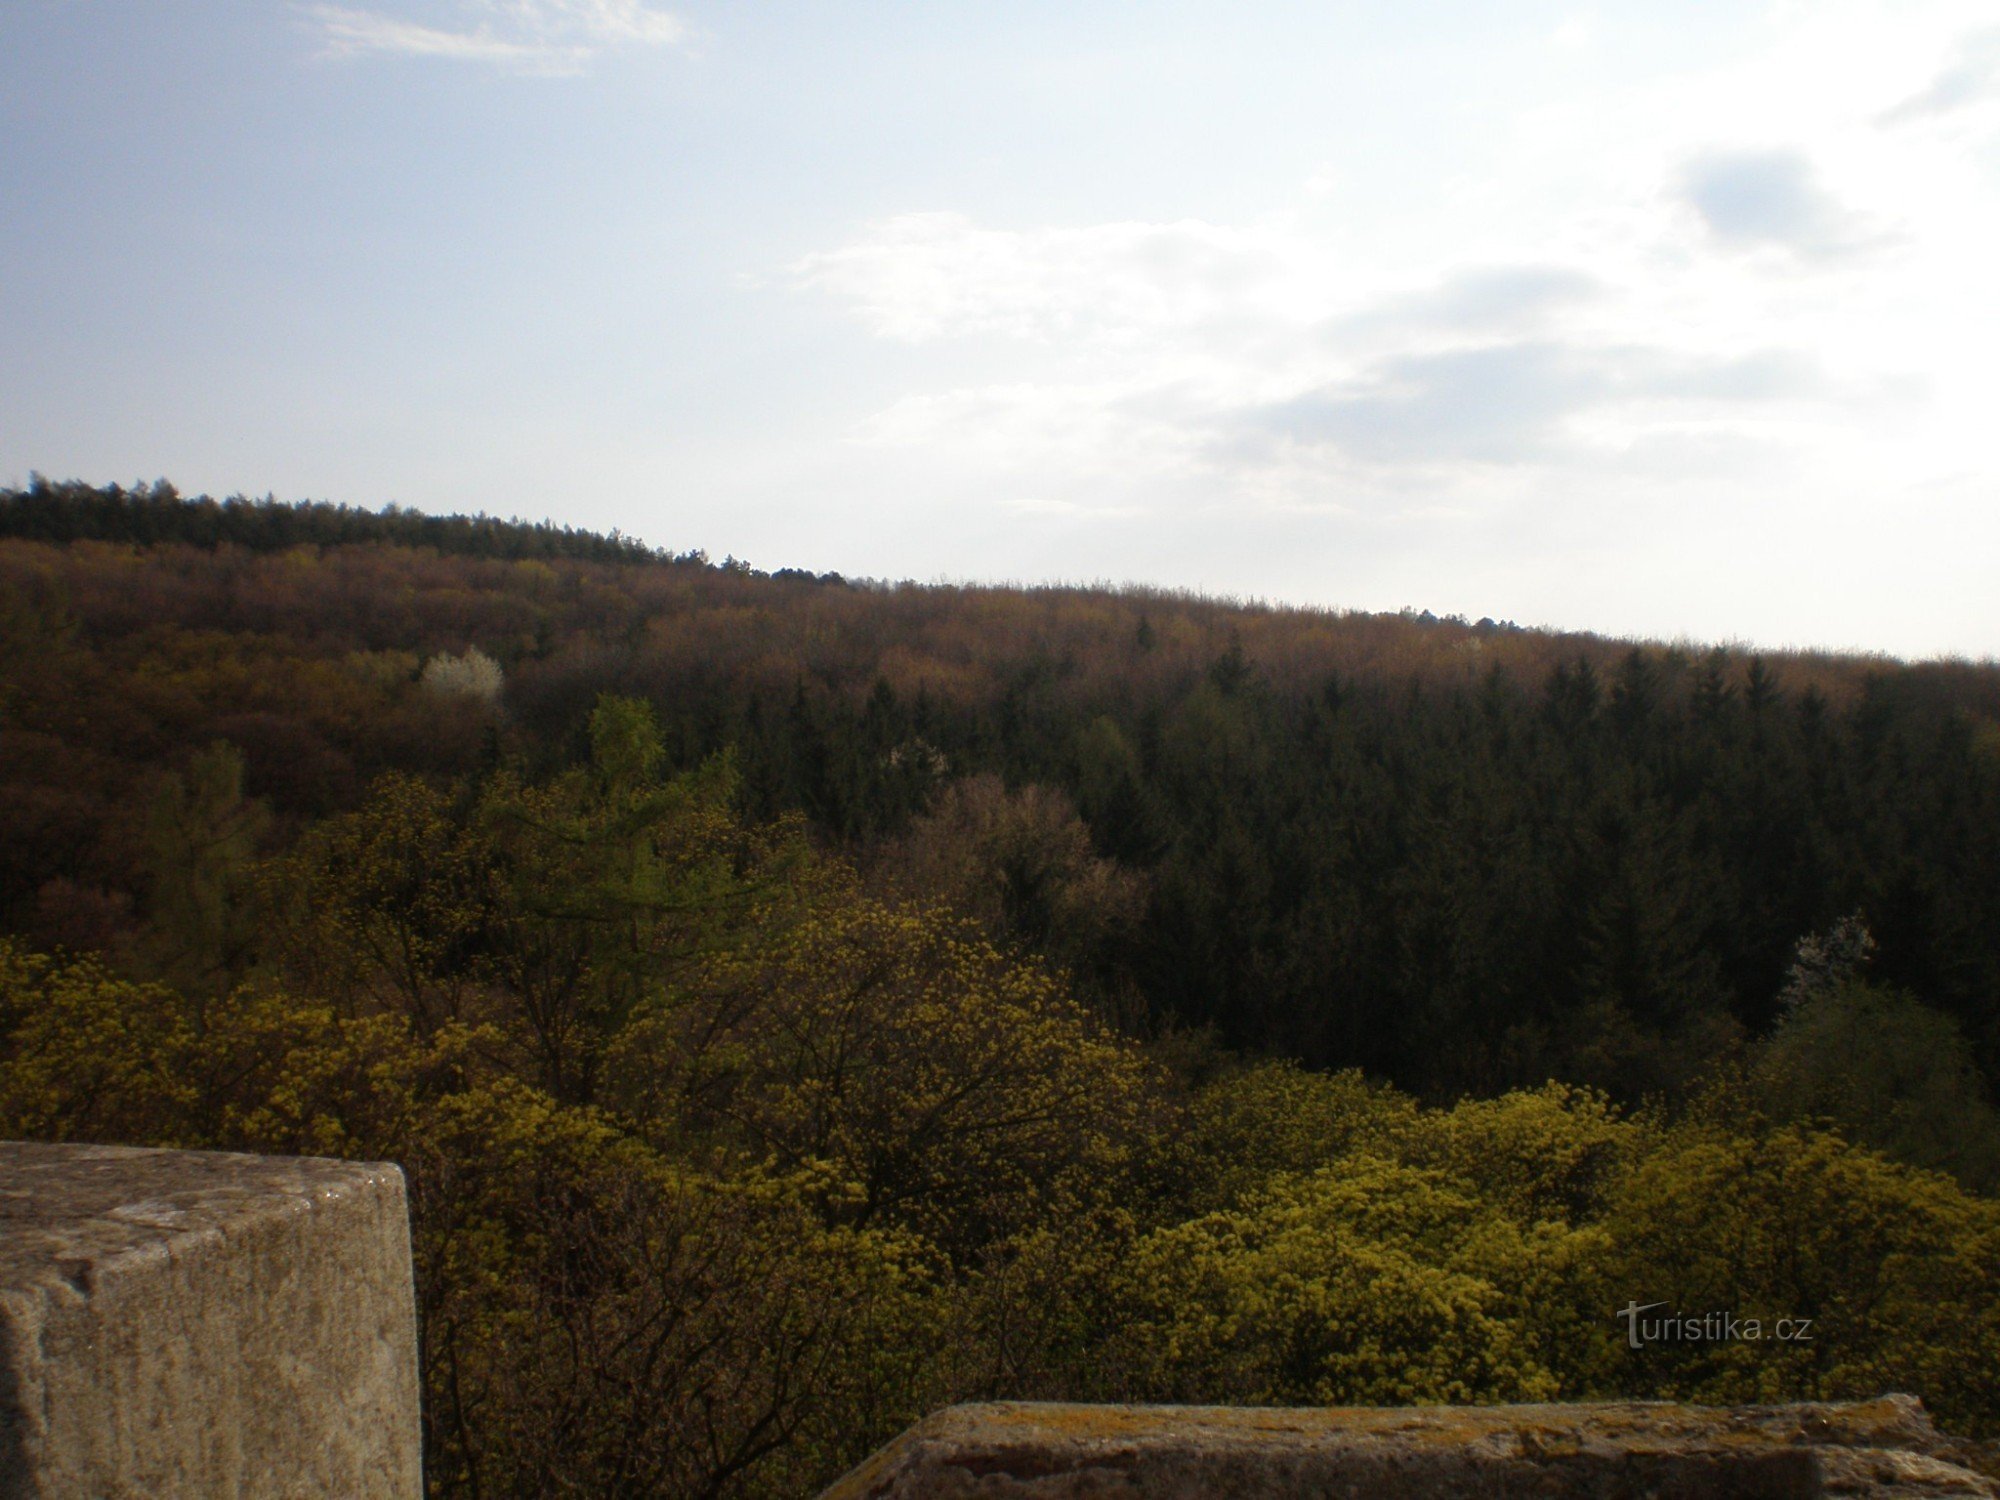 Vista dalla torre di osservazione sul parco forestale di Cibulka